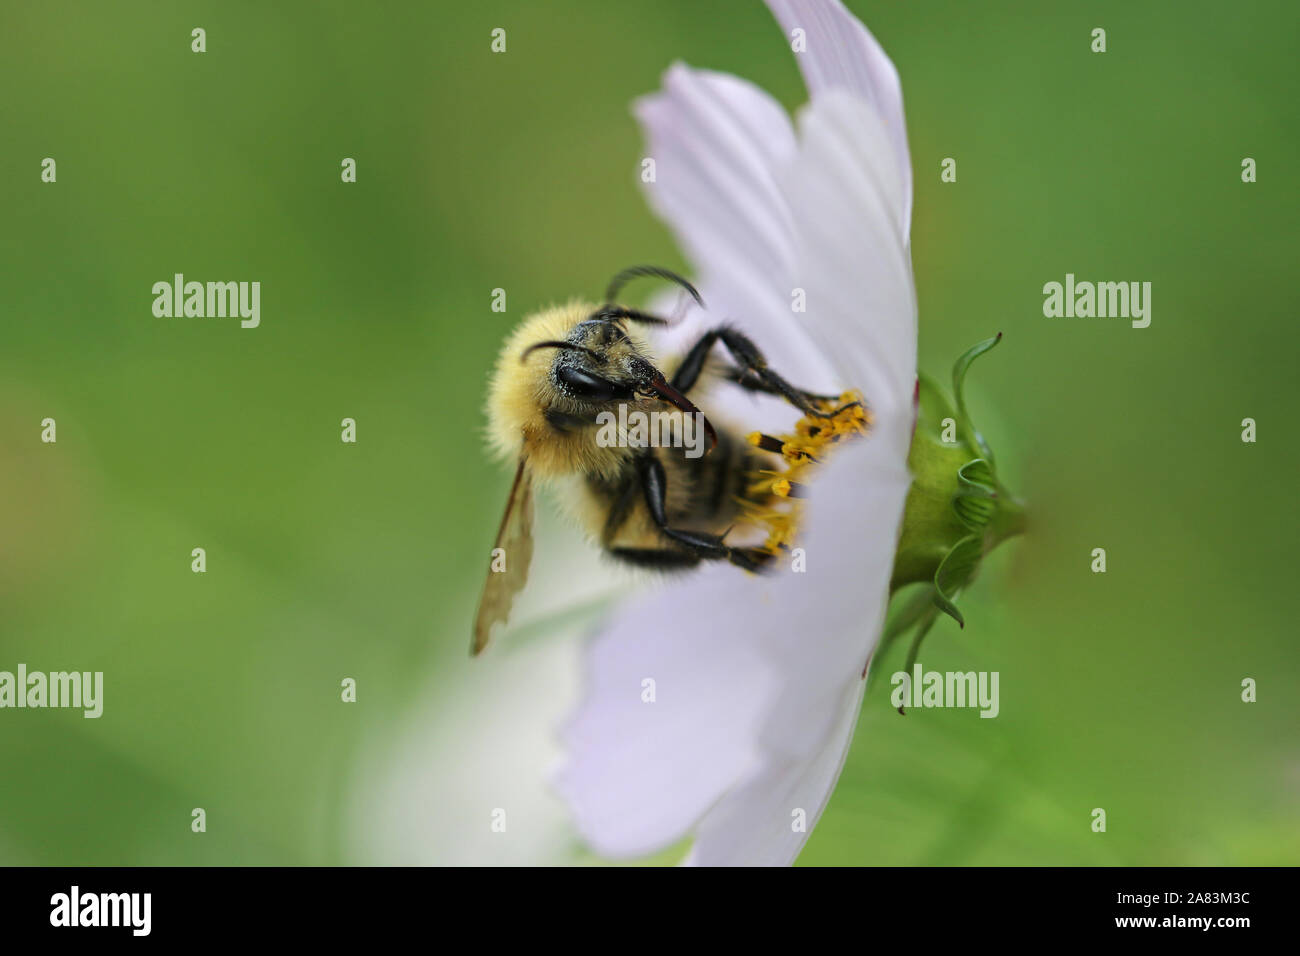 Orange Biene vermutlich ein Kuckuck Biene psithyrus barbutellis Nahaufnahme Pollen sammeln Auf einem Garten Cosmos Bipinnatus Blume auch eine mexikanische Aster genannt Stockfoto